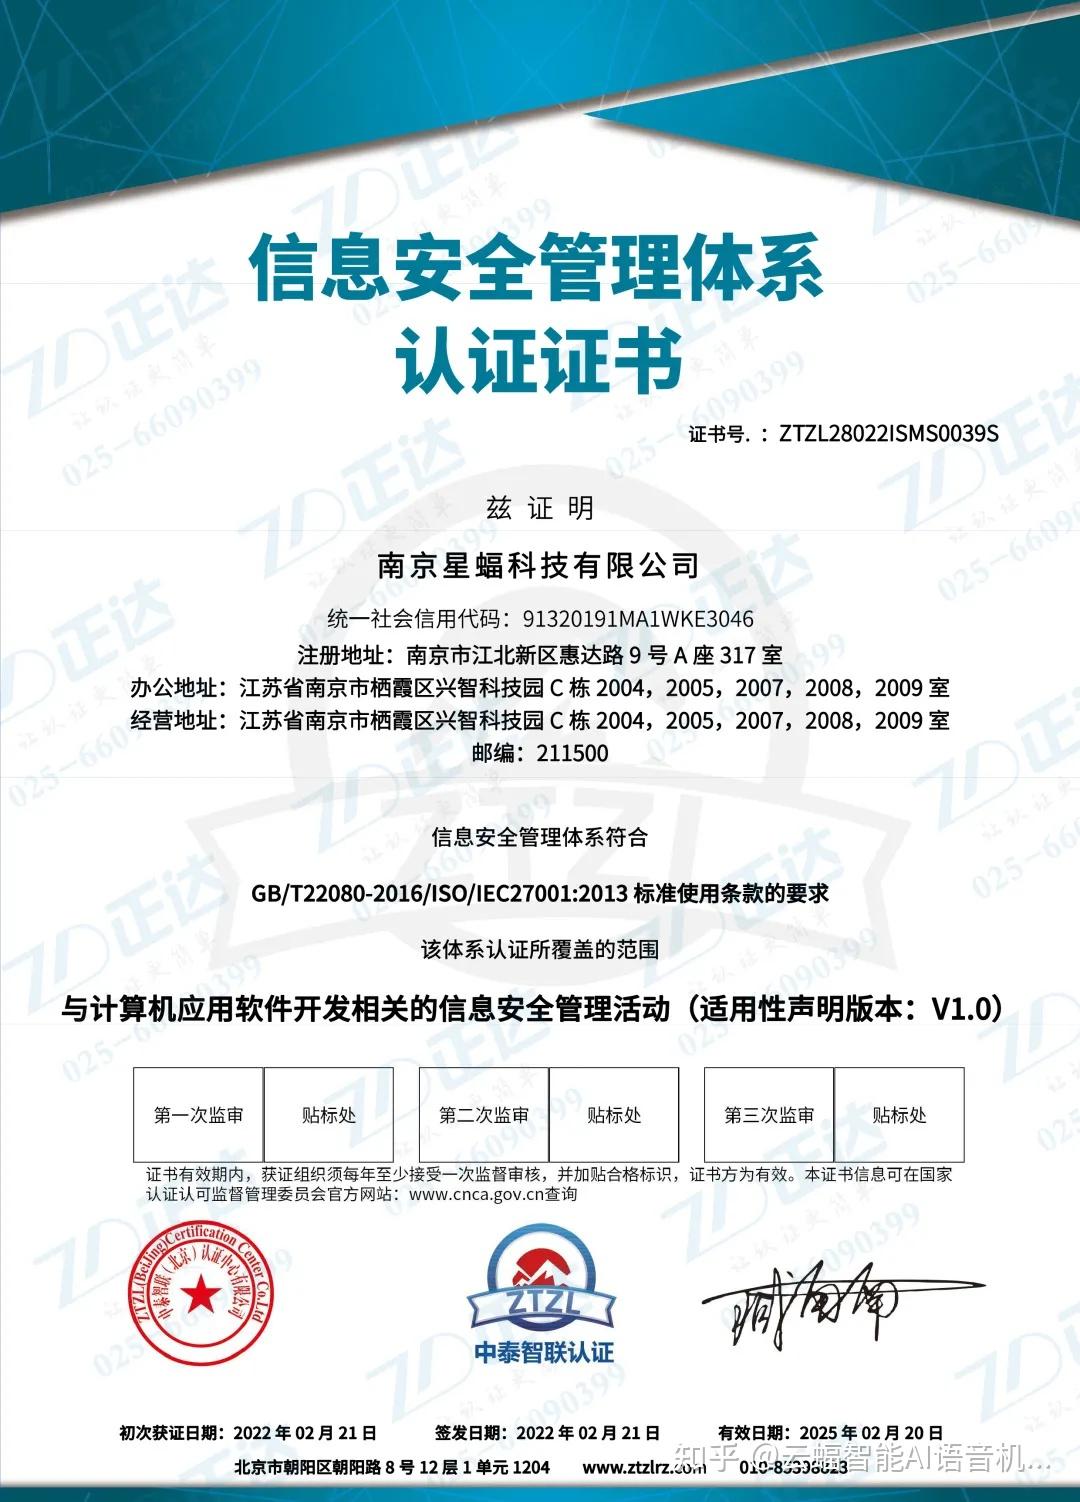 北京恩格威认证中心(北京恩格威认证中心有限公司)